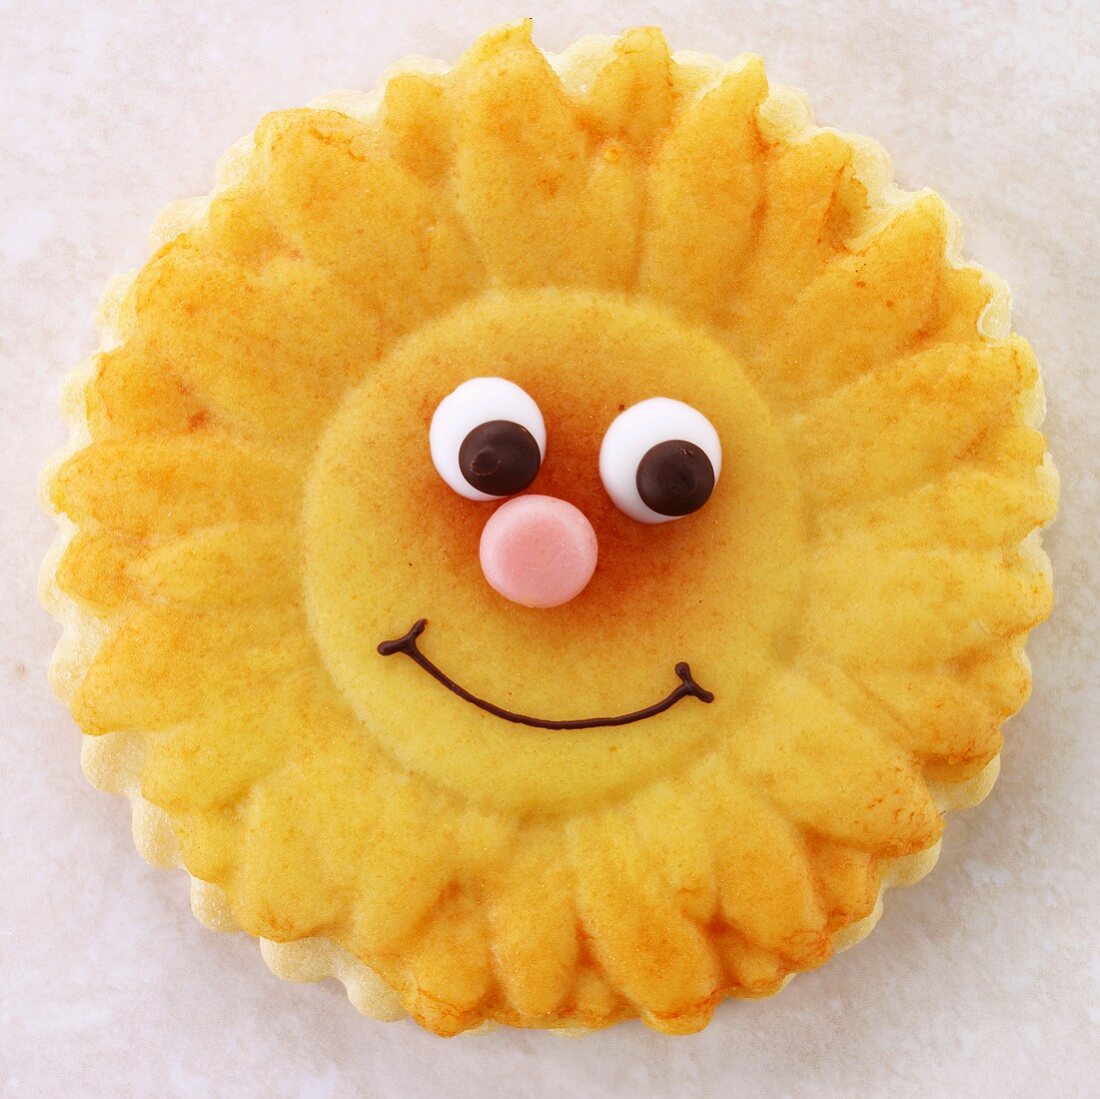 Keks in Sonnenblumenform mit Gesicht